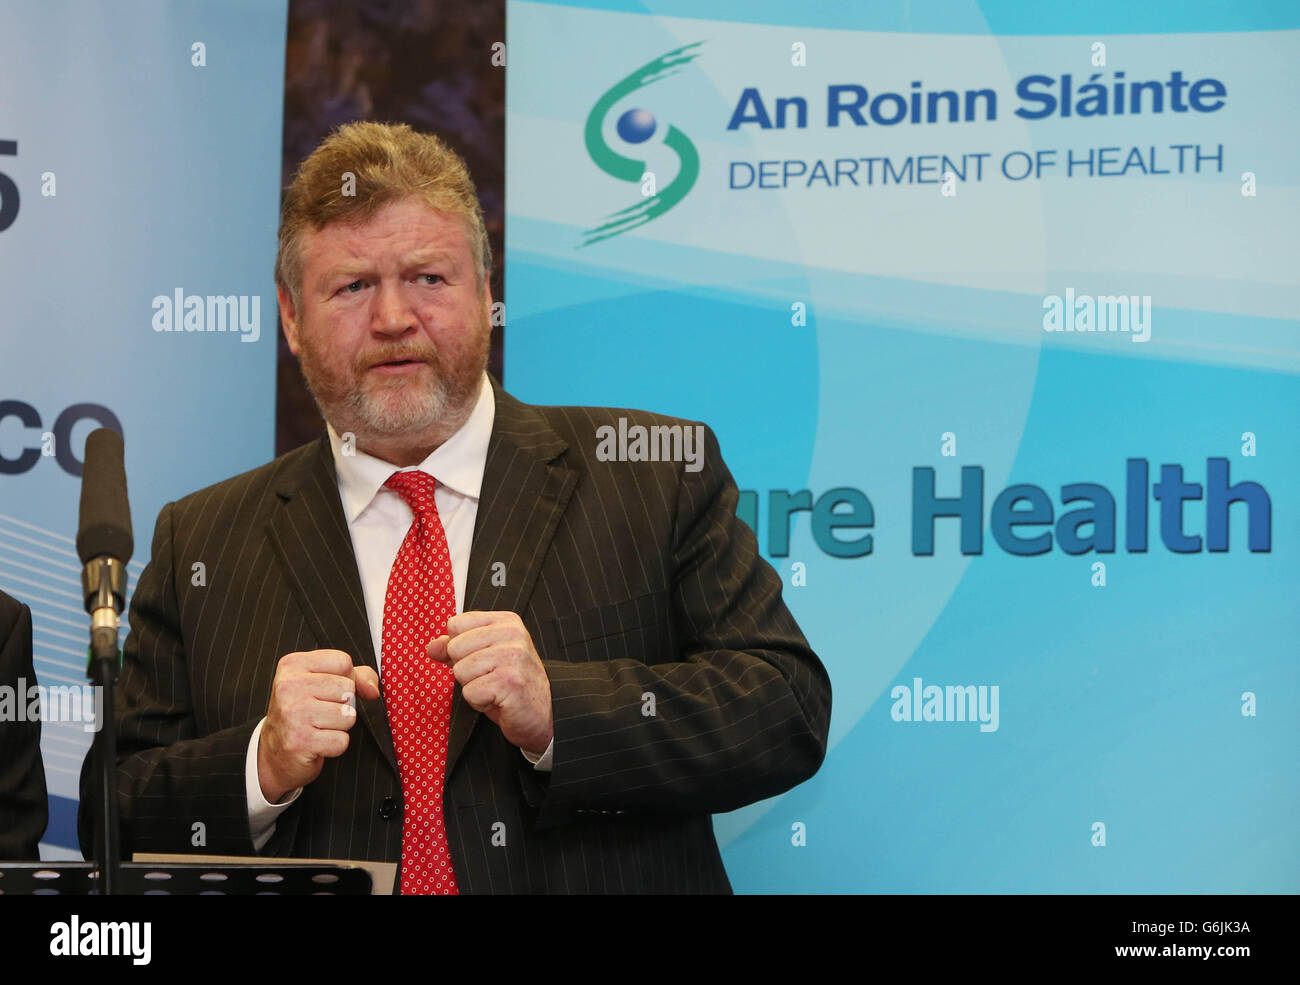 El ministro de salud, James Reilly, habla hoy de la conferencia de prensa sobre el pago de servicios de salud en edificios gubernamentales de Dublín, donde advirtió que los hospitales y las agencias de salud no deben violar un límite salarial. Foto de stock